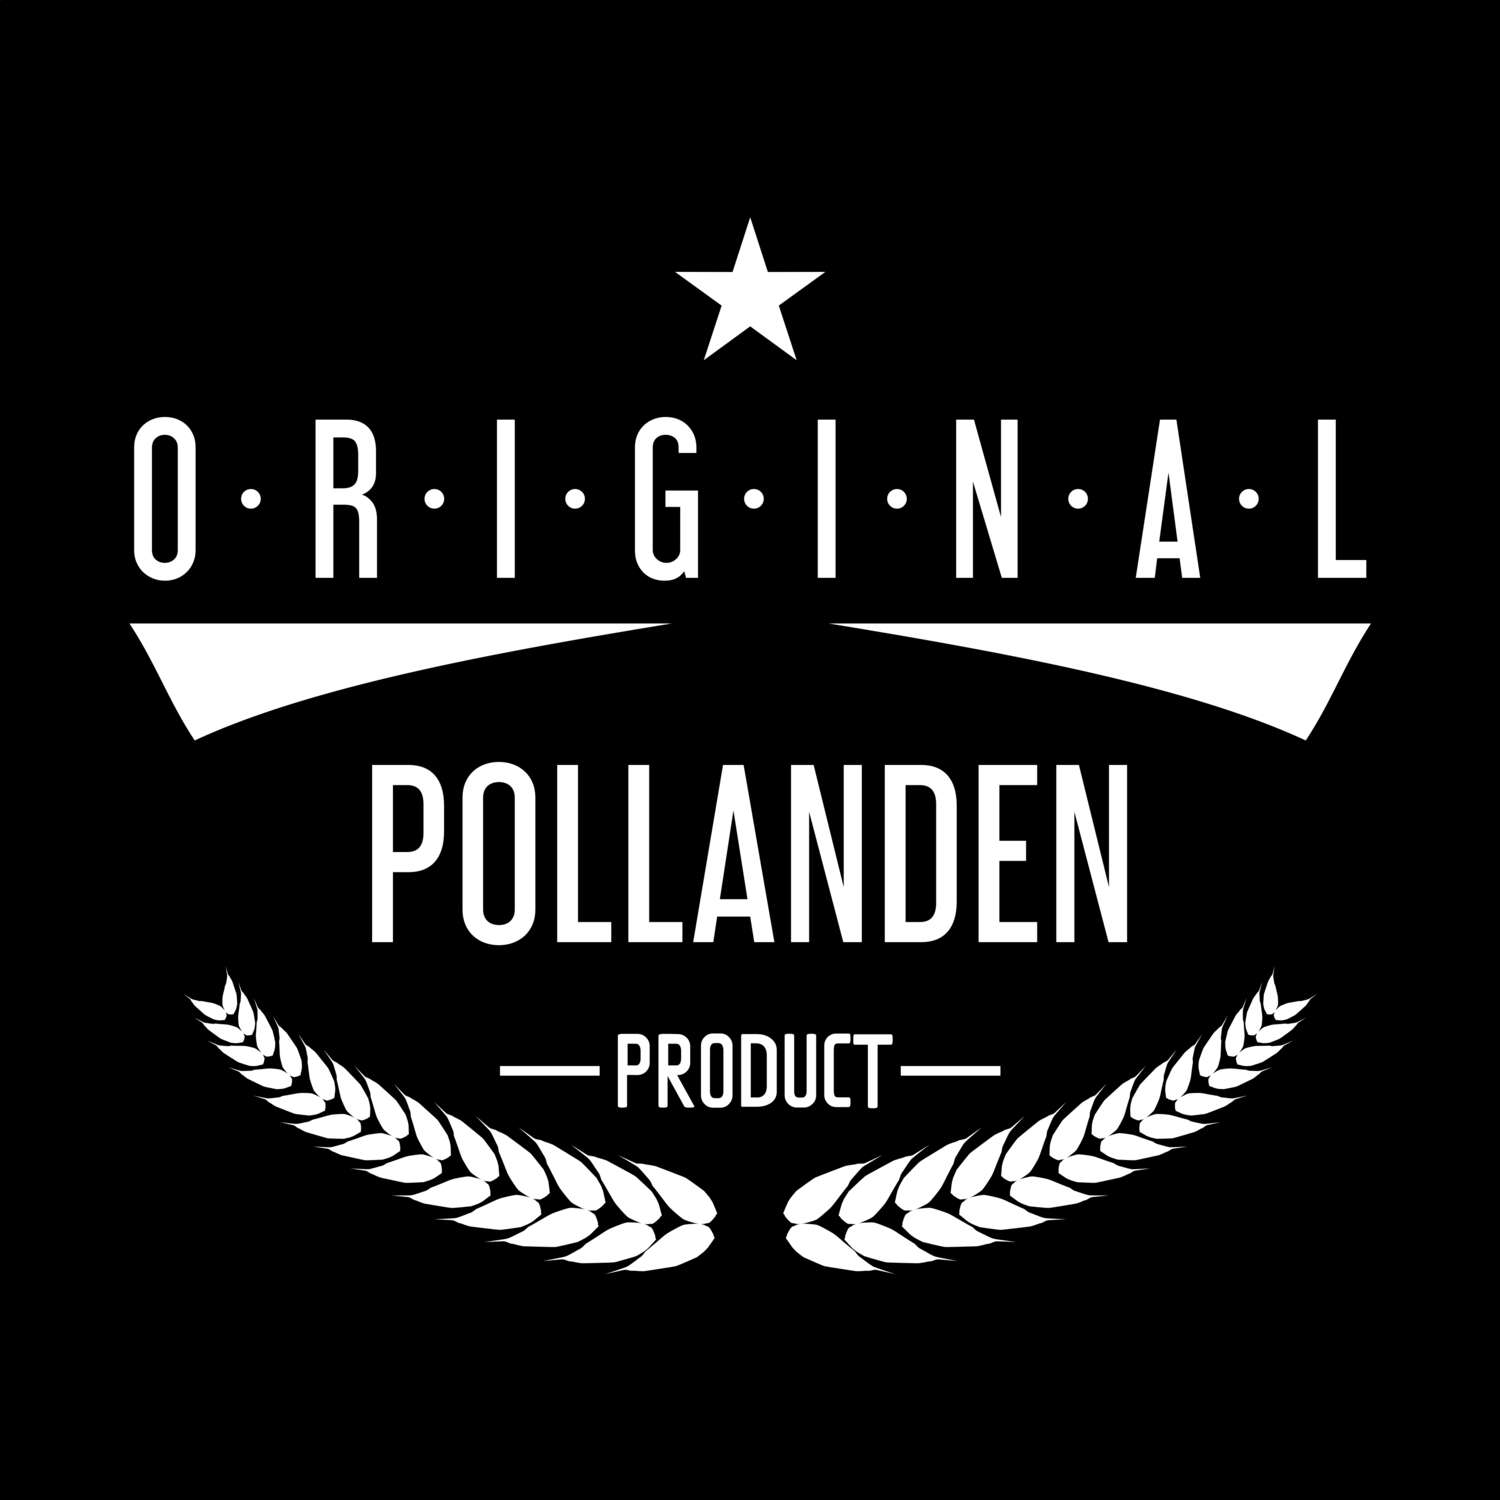 Pollanden T-Shirt »Original Product«